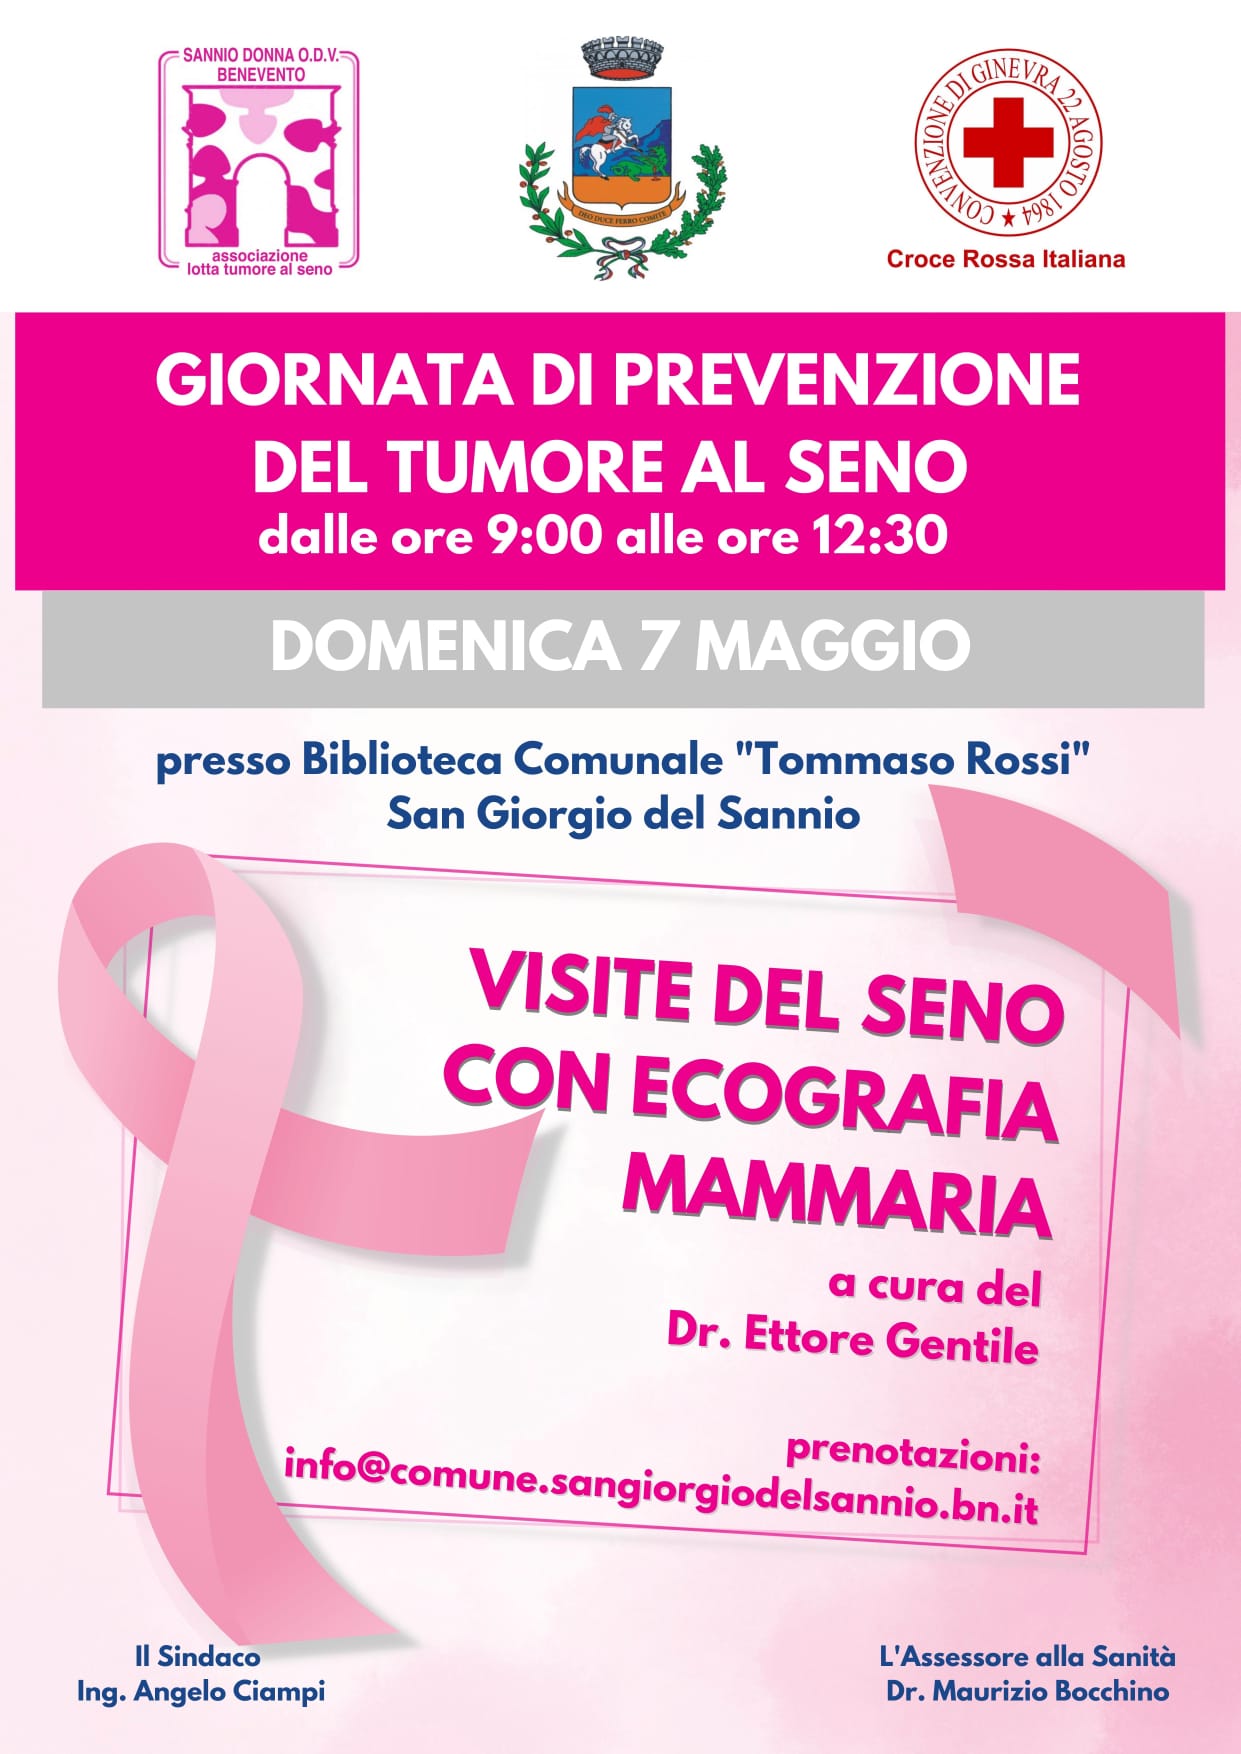 Sannio Donna, domani a San Giorgio del Sannio mattinata di prevenzione al seno